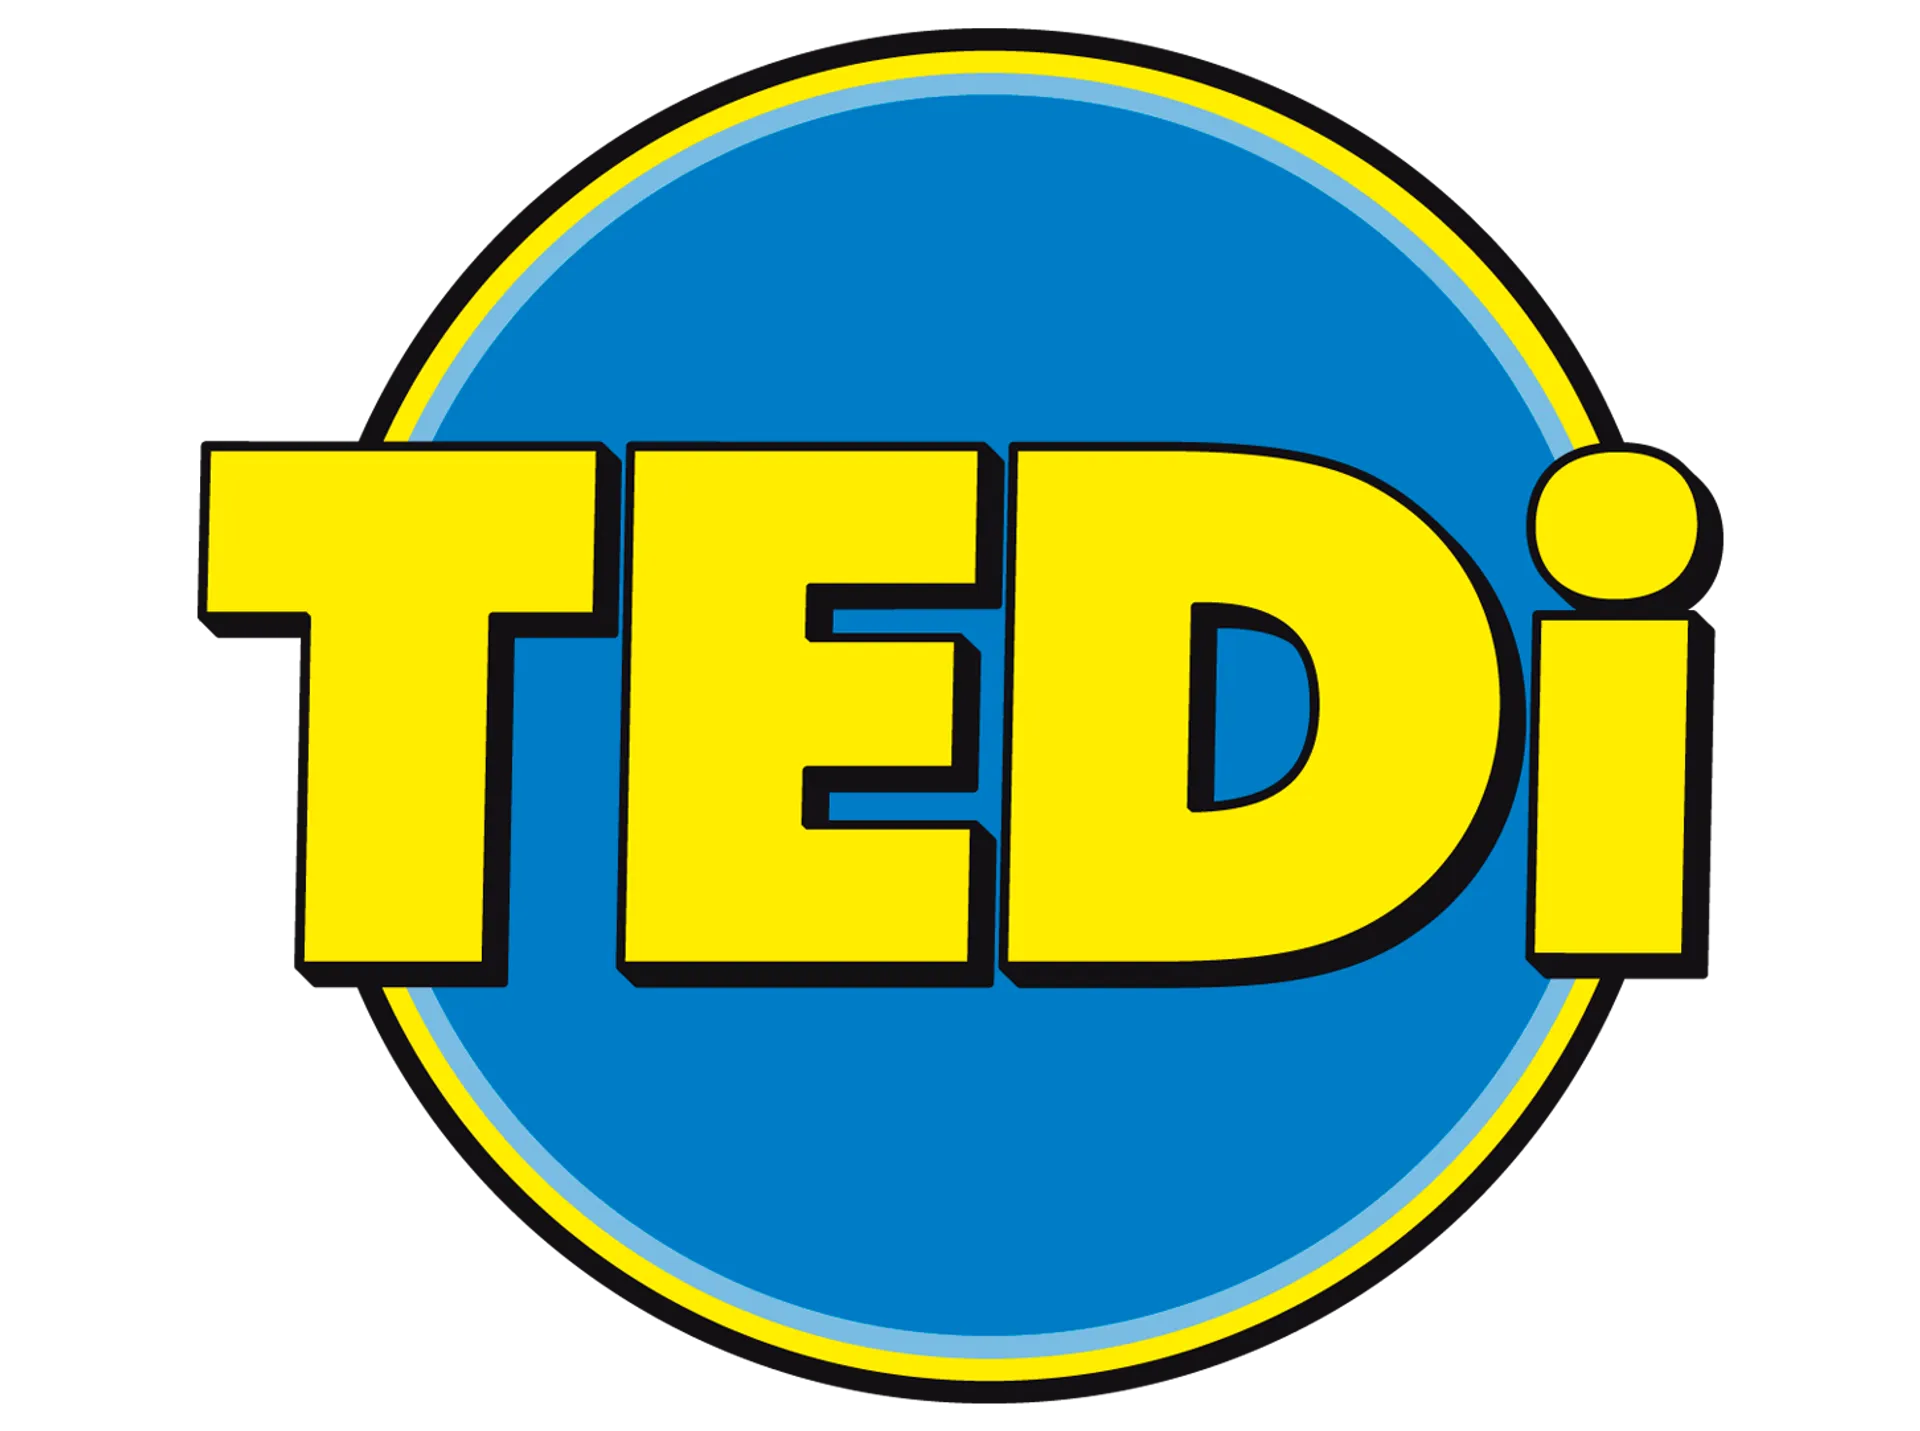 TEDI logo del volantino attuale